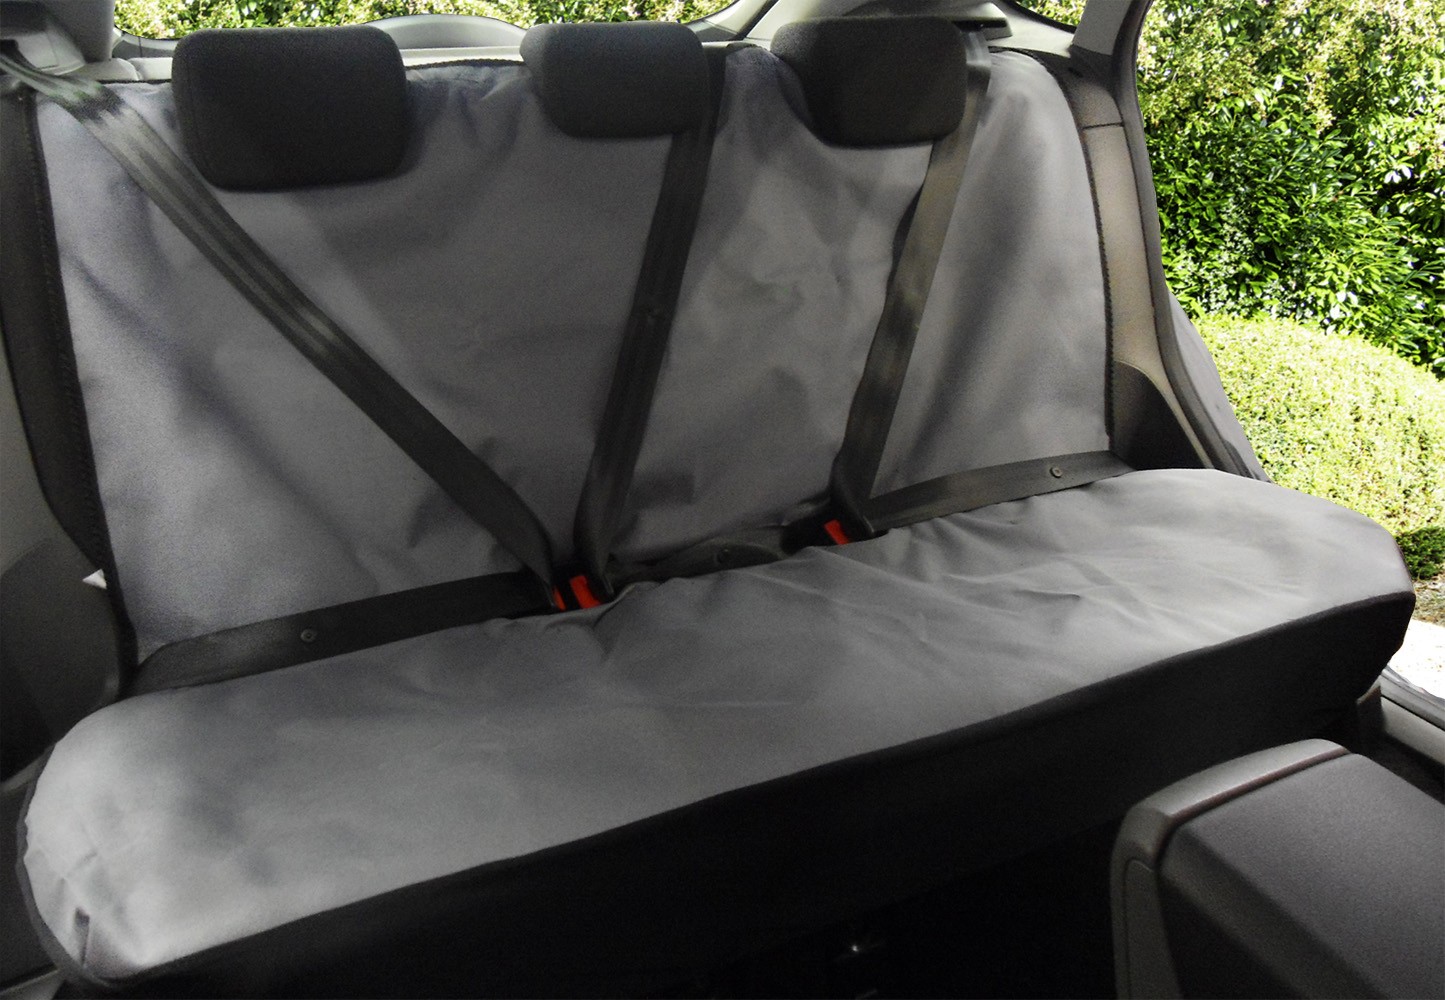 https://www.carmats-uk.com/wp-content/uploads/2021/07/Heavy-Duty-Rear-Seat-Cover-Grey.jpg